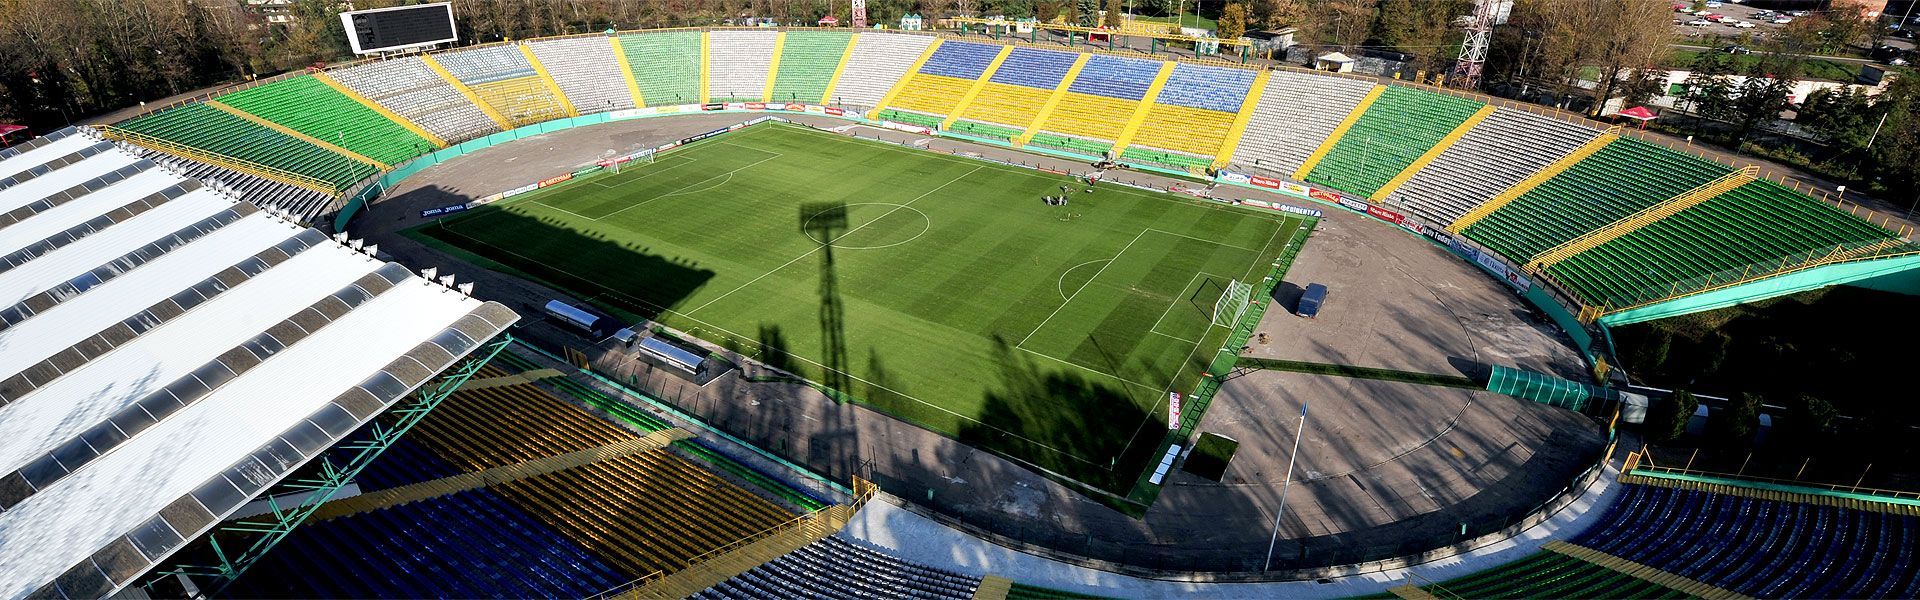 На стадионе "Карпат" свои матчи будет проводить клуб из Первой лиги